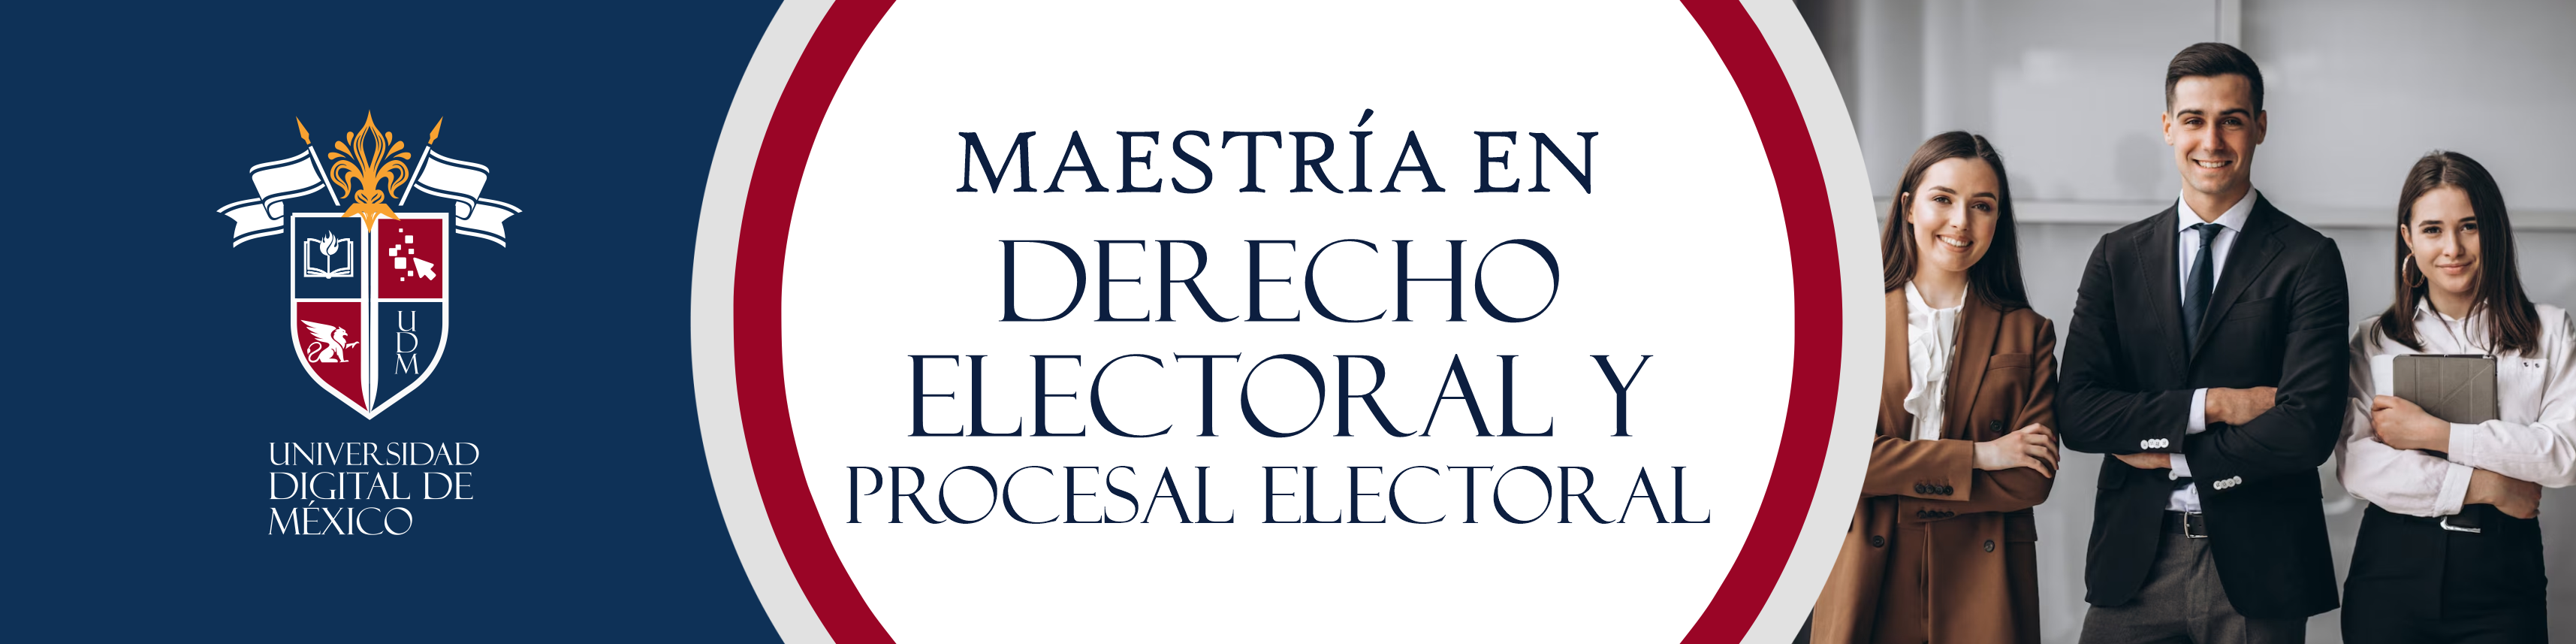 Maestría en Derecho Electoral y Procesal Electoral.